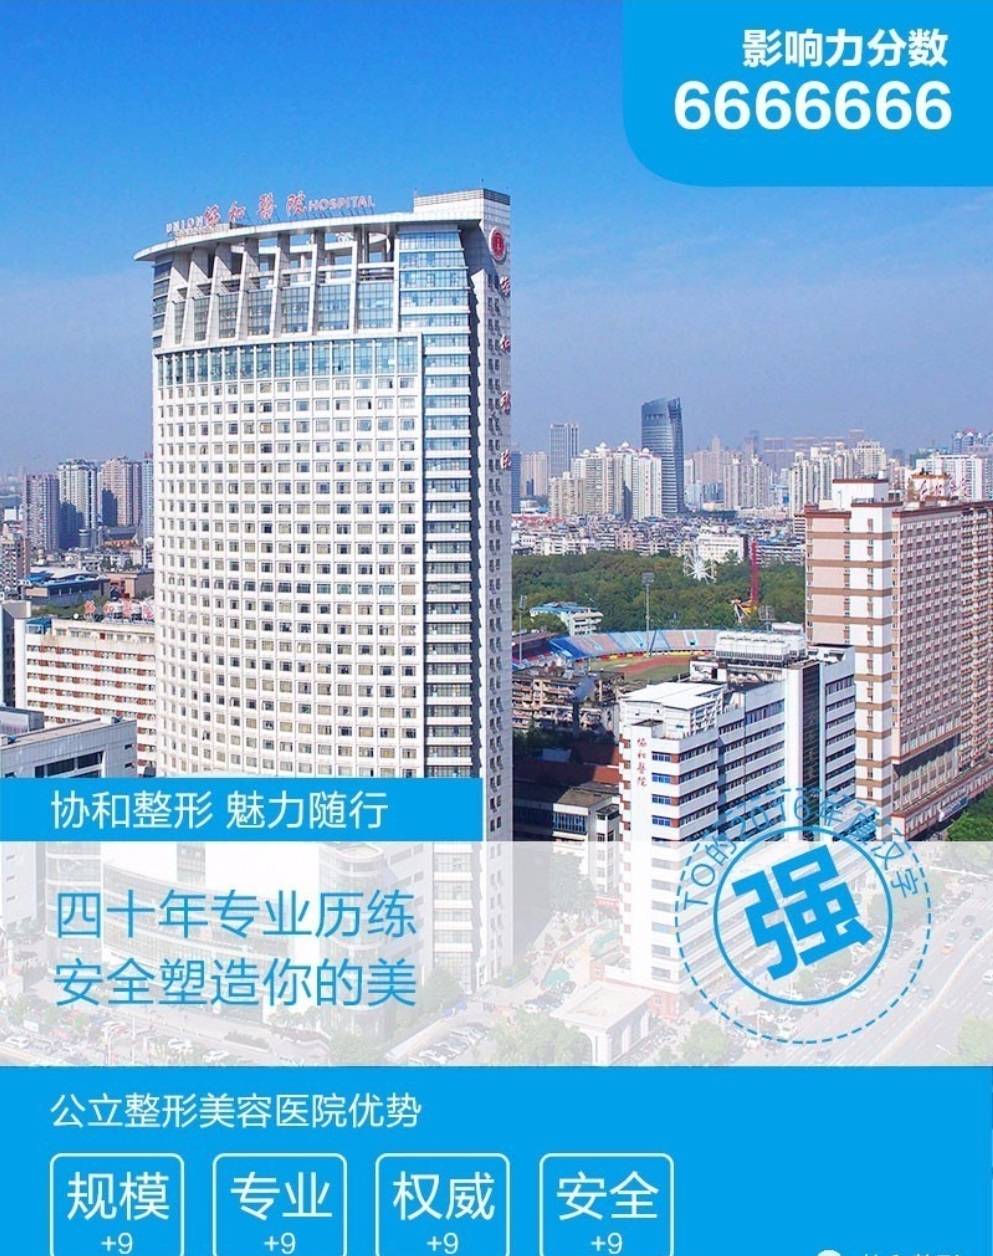 武汉协和医院整形美容中心环境图1